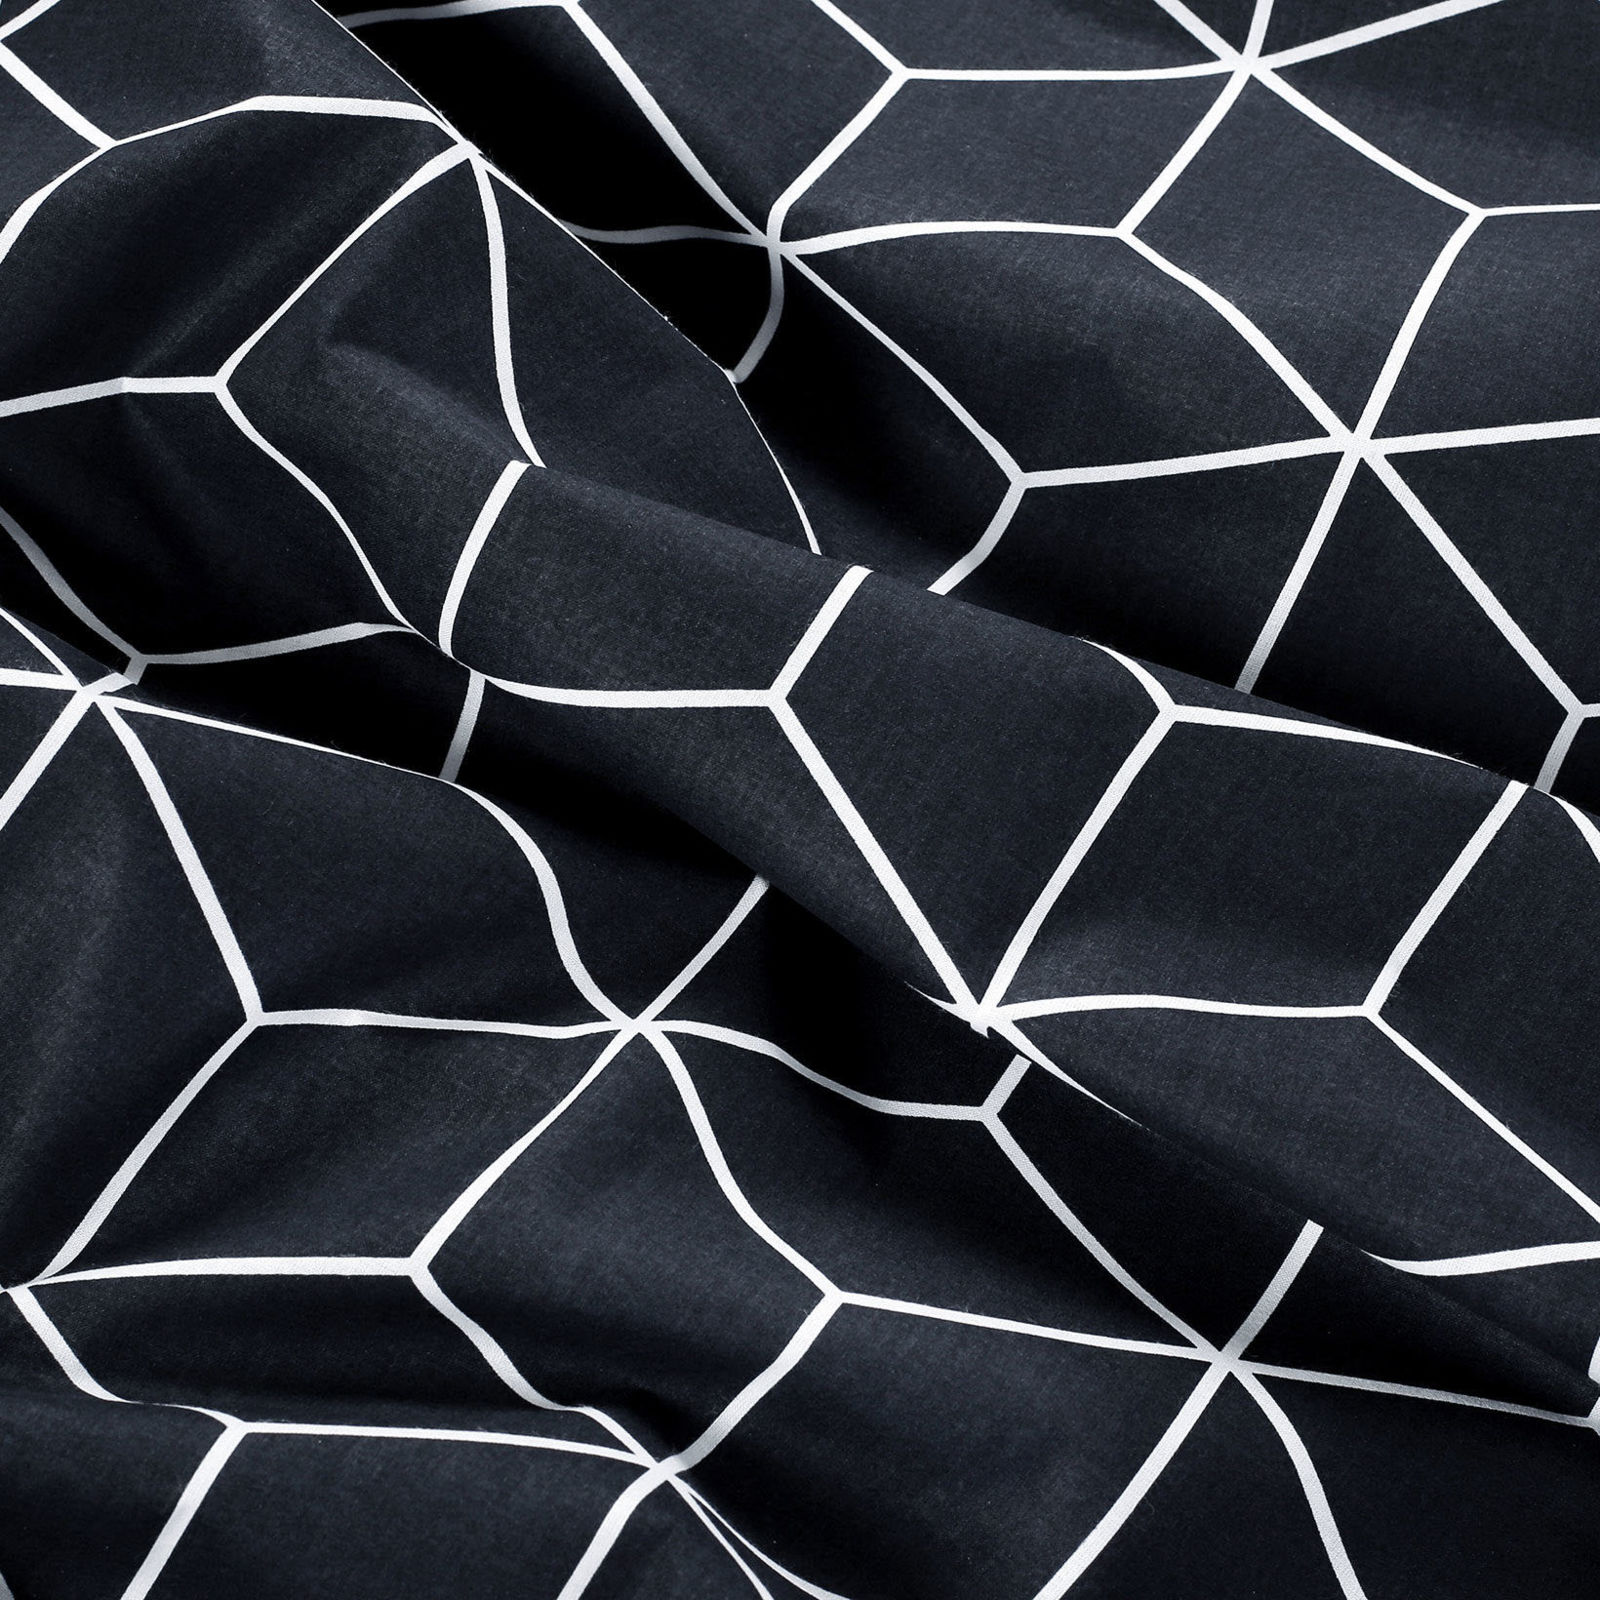 Pamut körgumis lepedő - mozaik mintás, sötétkék alapon